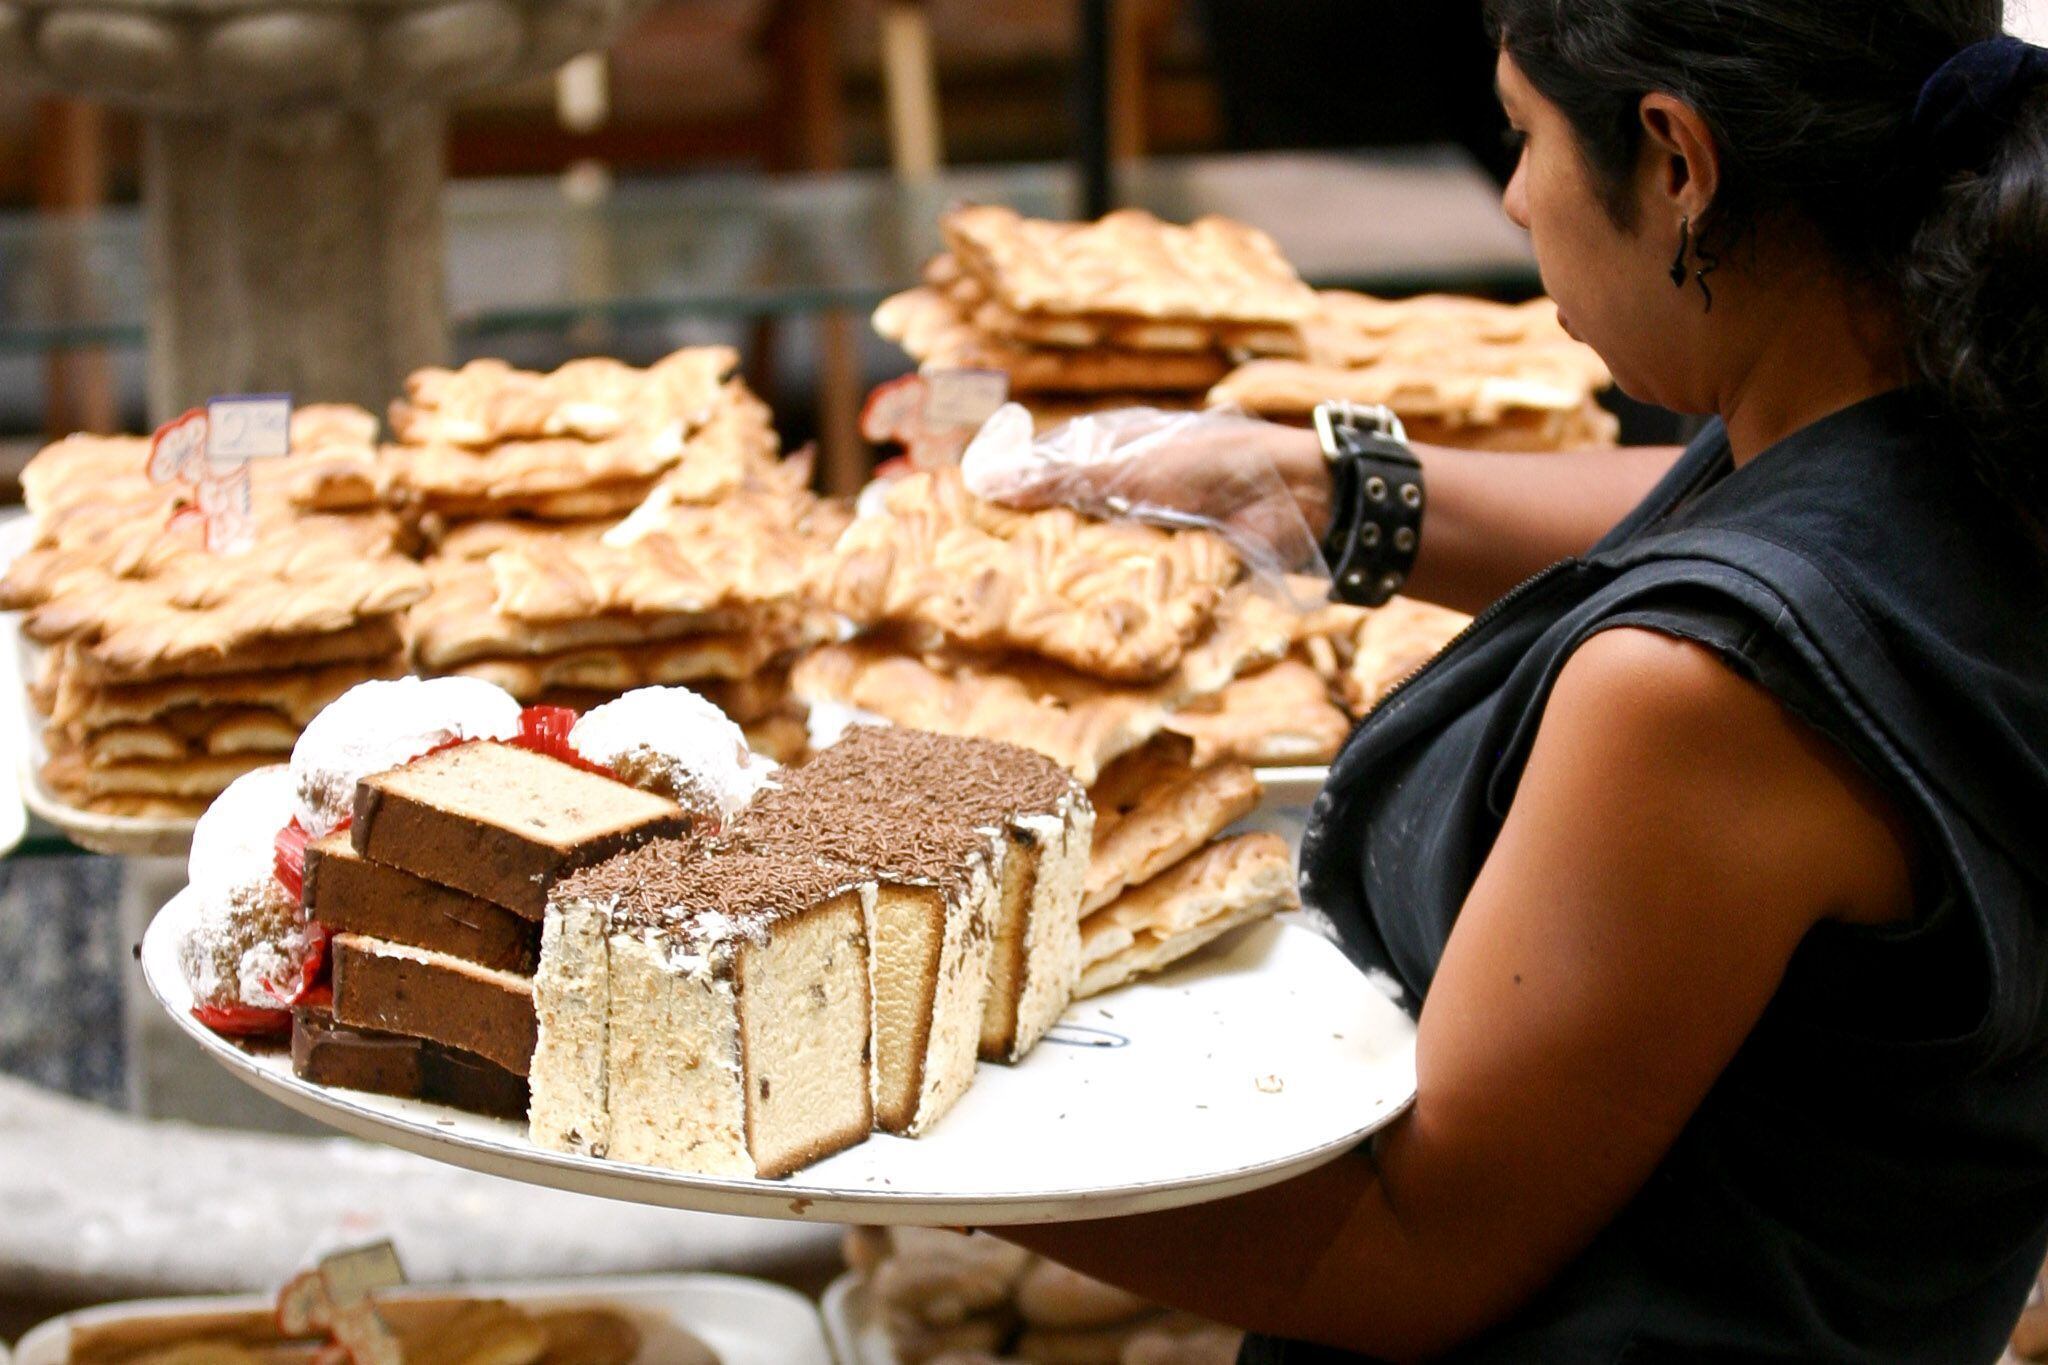 Existen varios tipos de pan dulce como las conchas de vainilla y las orejas. (Foto: Cuartoscuro / Rodolfo Angulo)